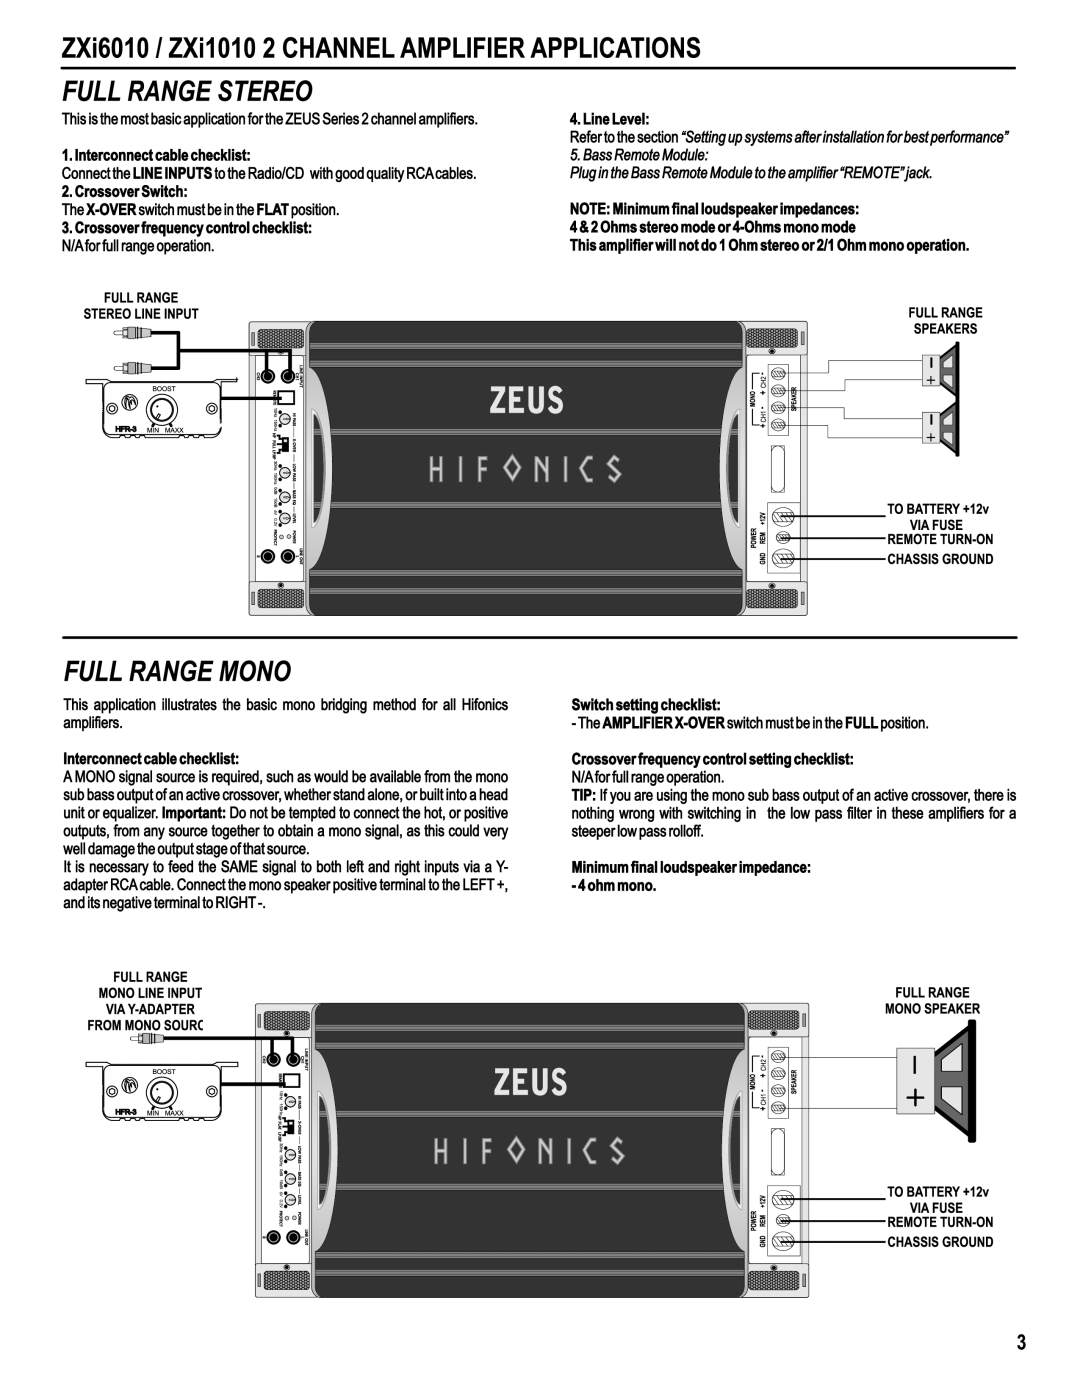 Hifionics ZXi6010, ZXi8010, ZXi1010, ZXi4410, ZXi6410 manual 